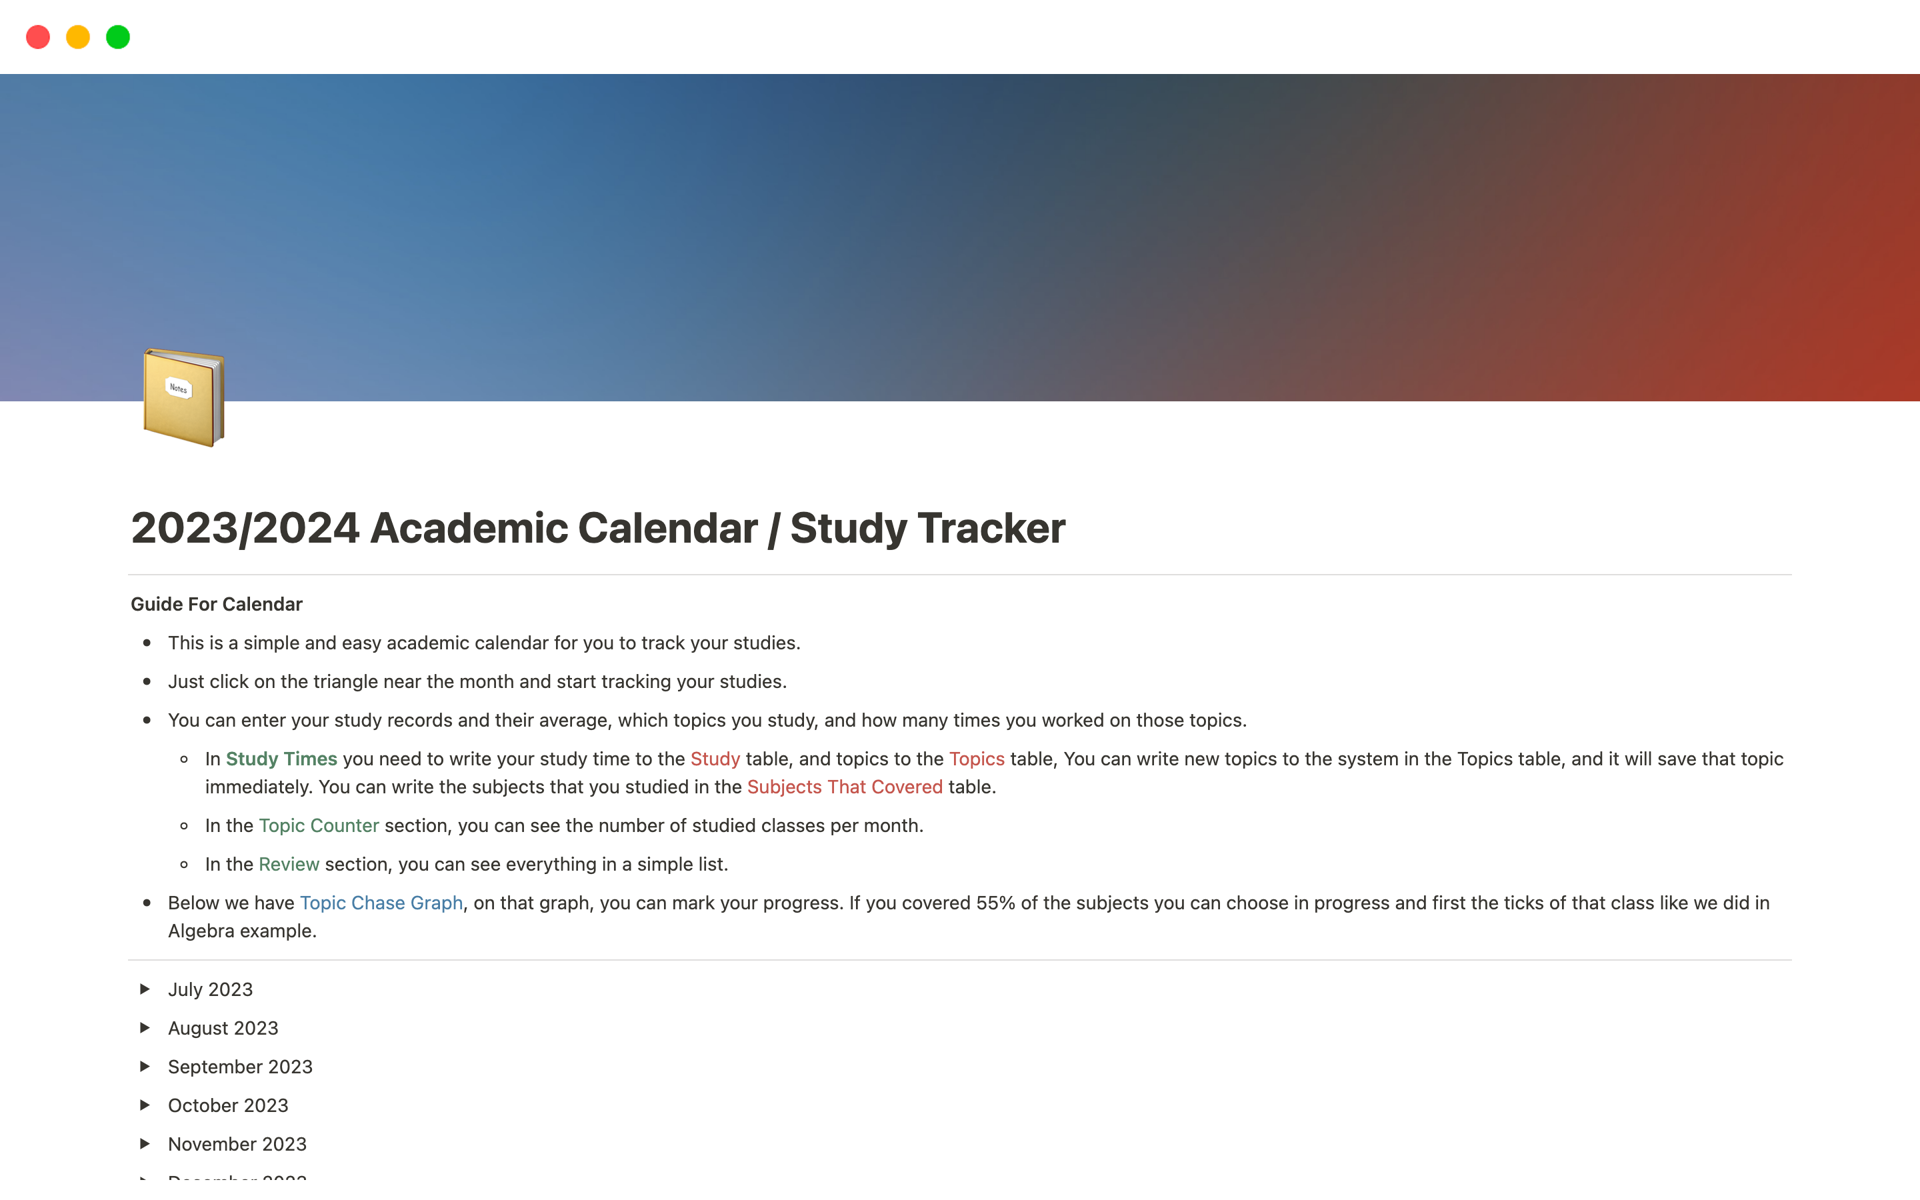 En förhandsgranskning av mallen för 2023/2024 Academic Calendar / Study Tracker